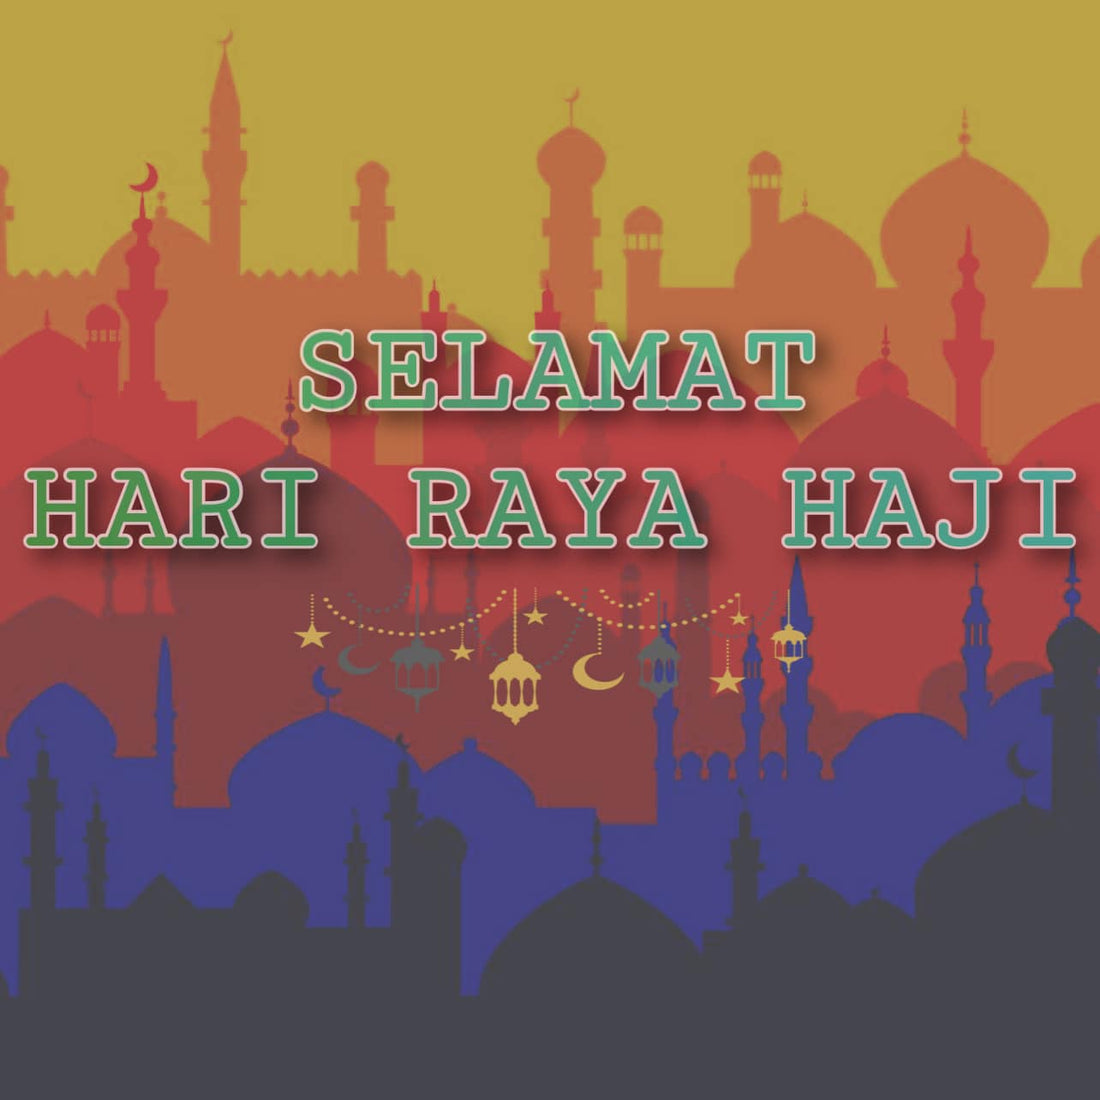 Hari Raya Haji Update and Promotion